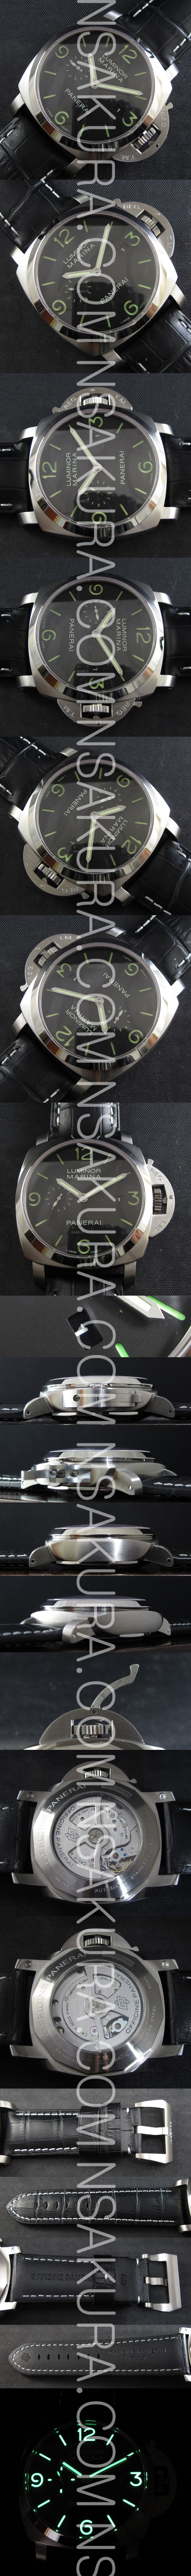 スーパーコピー時計 パネライ ルミノール マリーナ PAM223　，ハイエンドモデル - ウインドウを閉じる